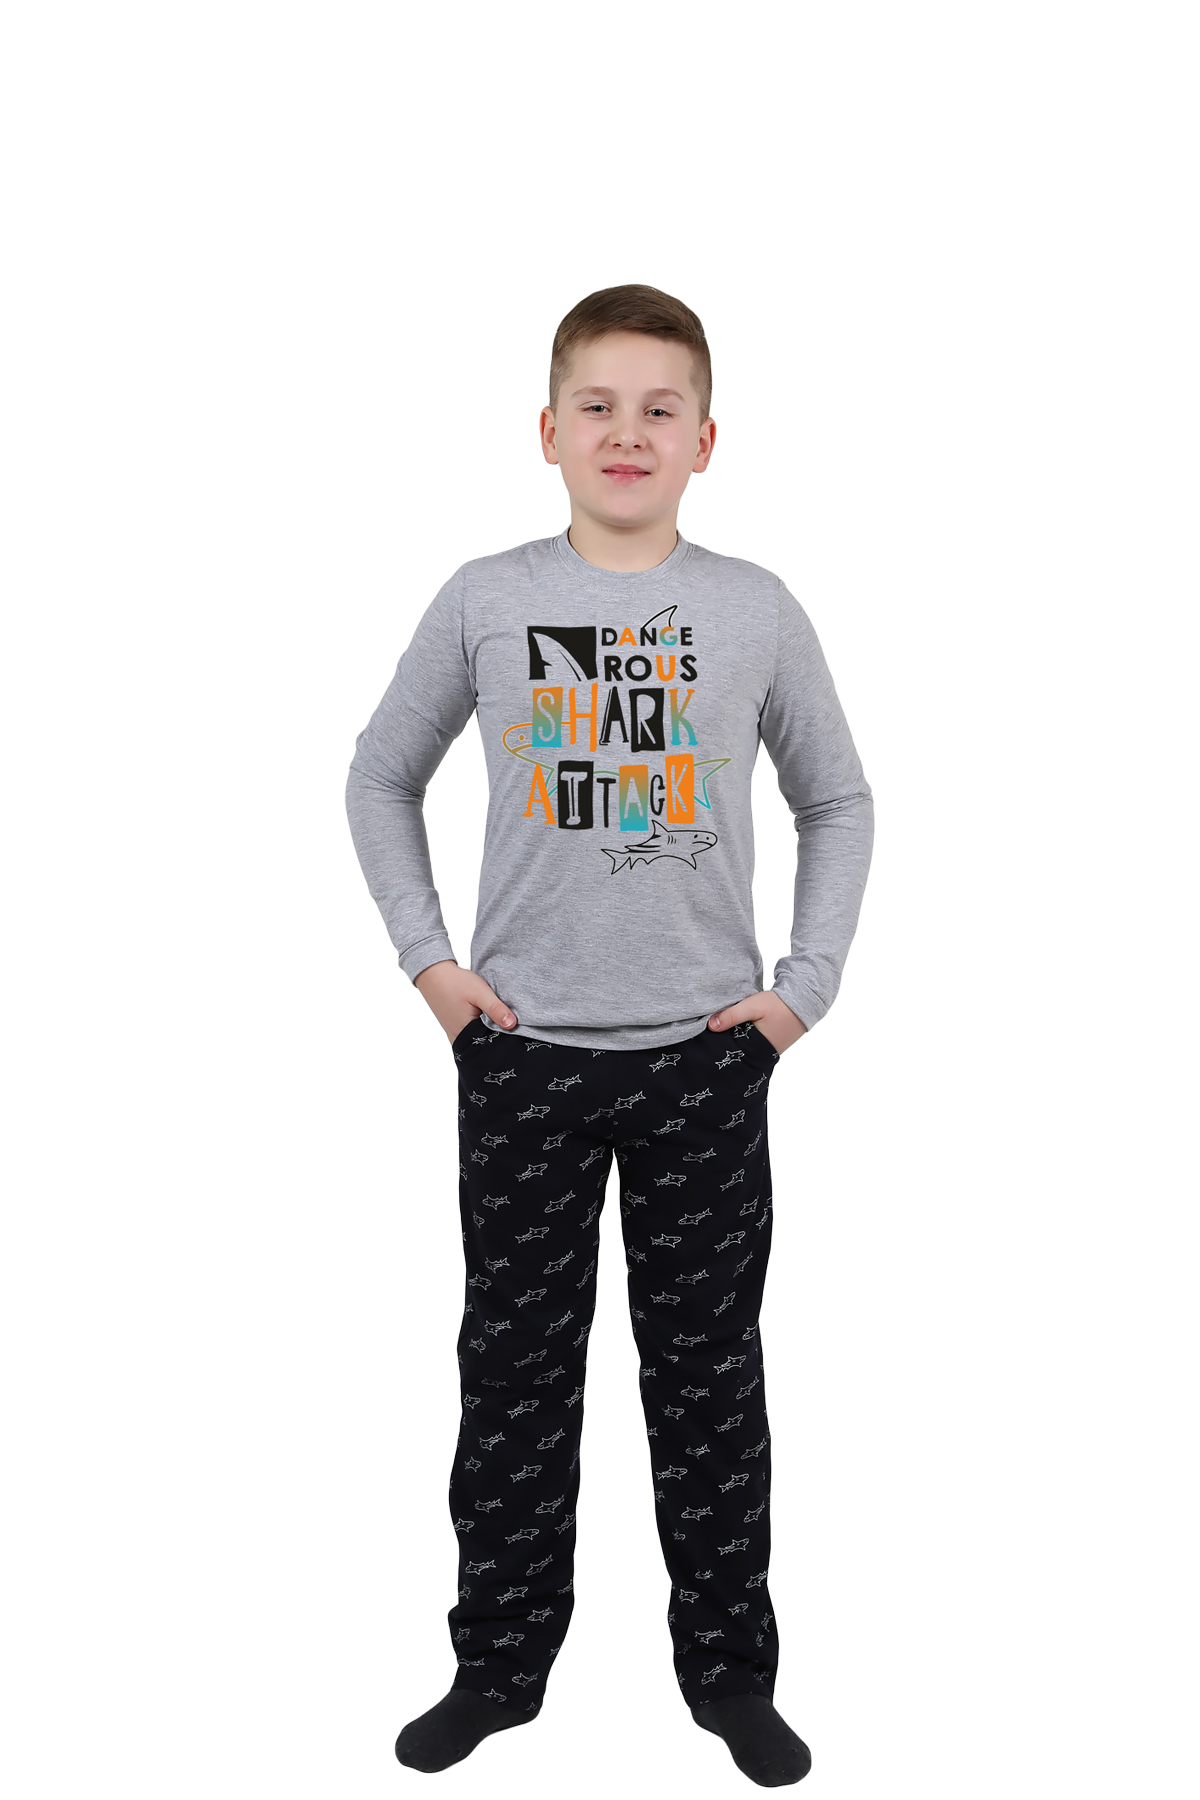 Детская пижама Акула Цвет: Серый Меланж (10 лет), размер 10 лет otj636451 Детская пижама Акула Цвет: Серый Меланж (10 лет) - фото 1